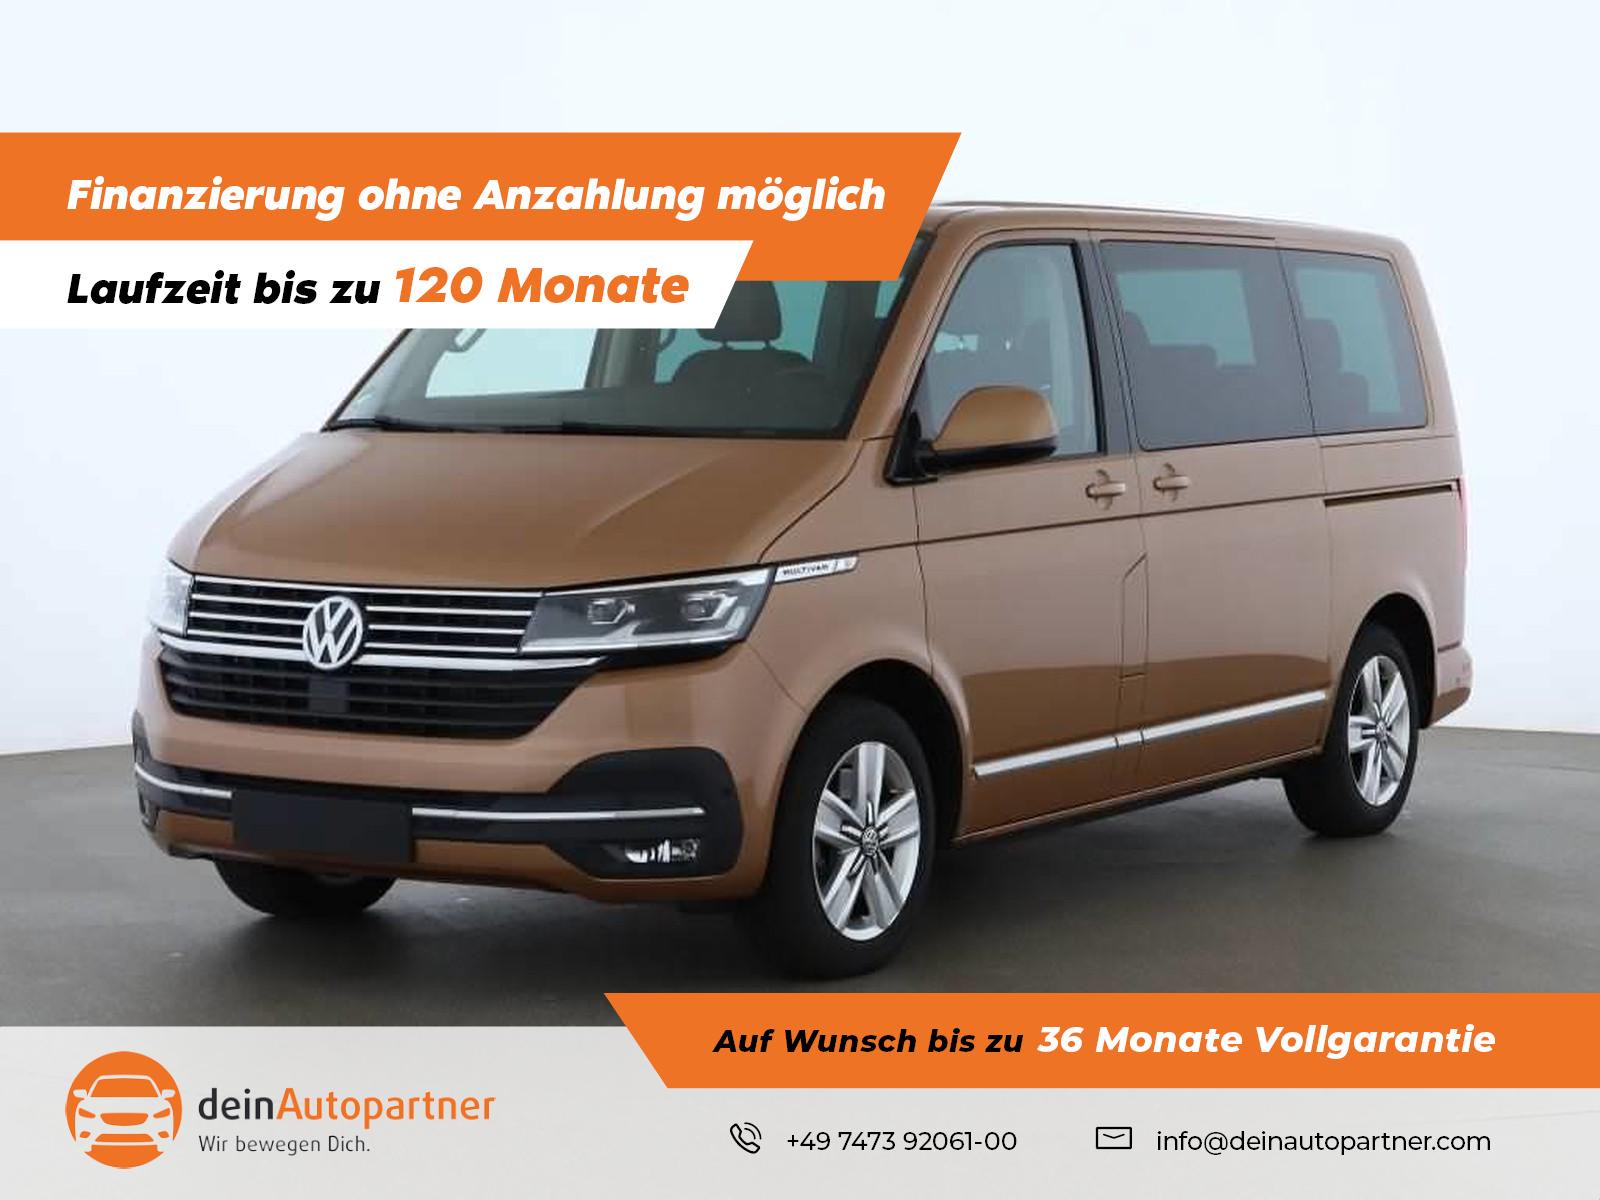 Volkswagen T6 Multivan T6.1 Multivan Highl. gebraucht kaufen in Mössingen  Preis 58950 eur - Int.Nr.: 2042